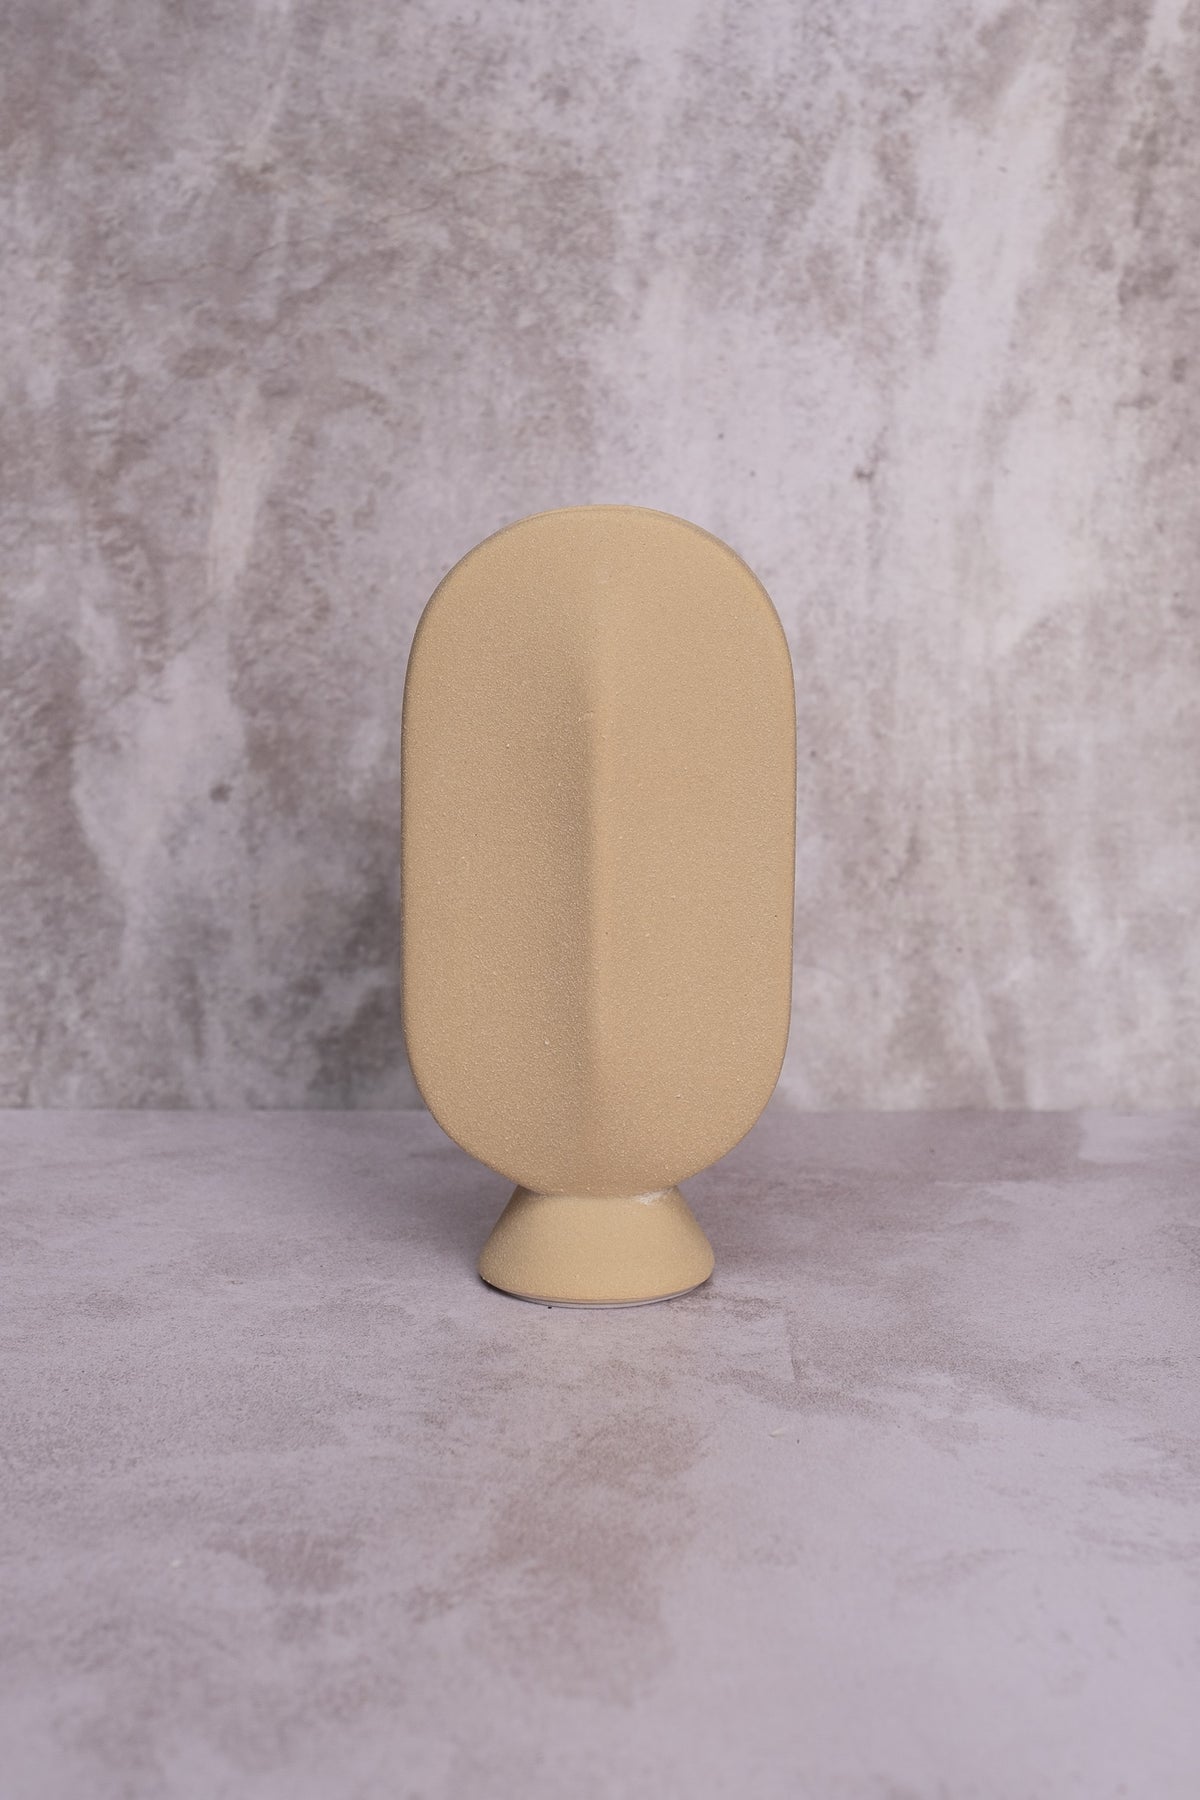 Normandy Oval Ceramic Vase (18cm)